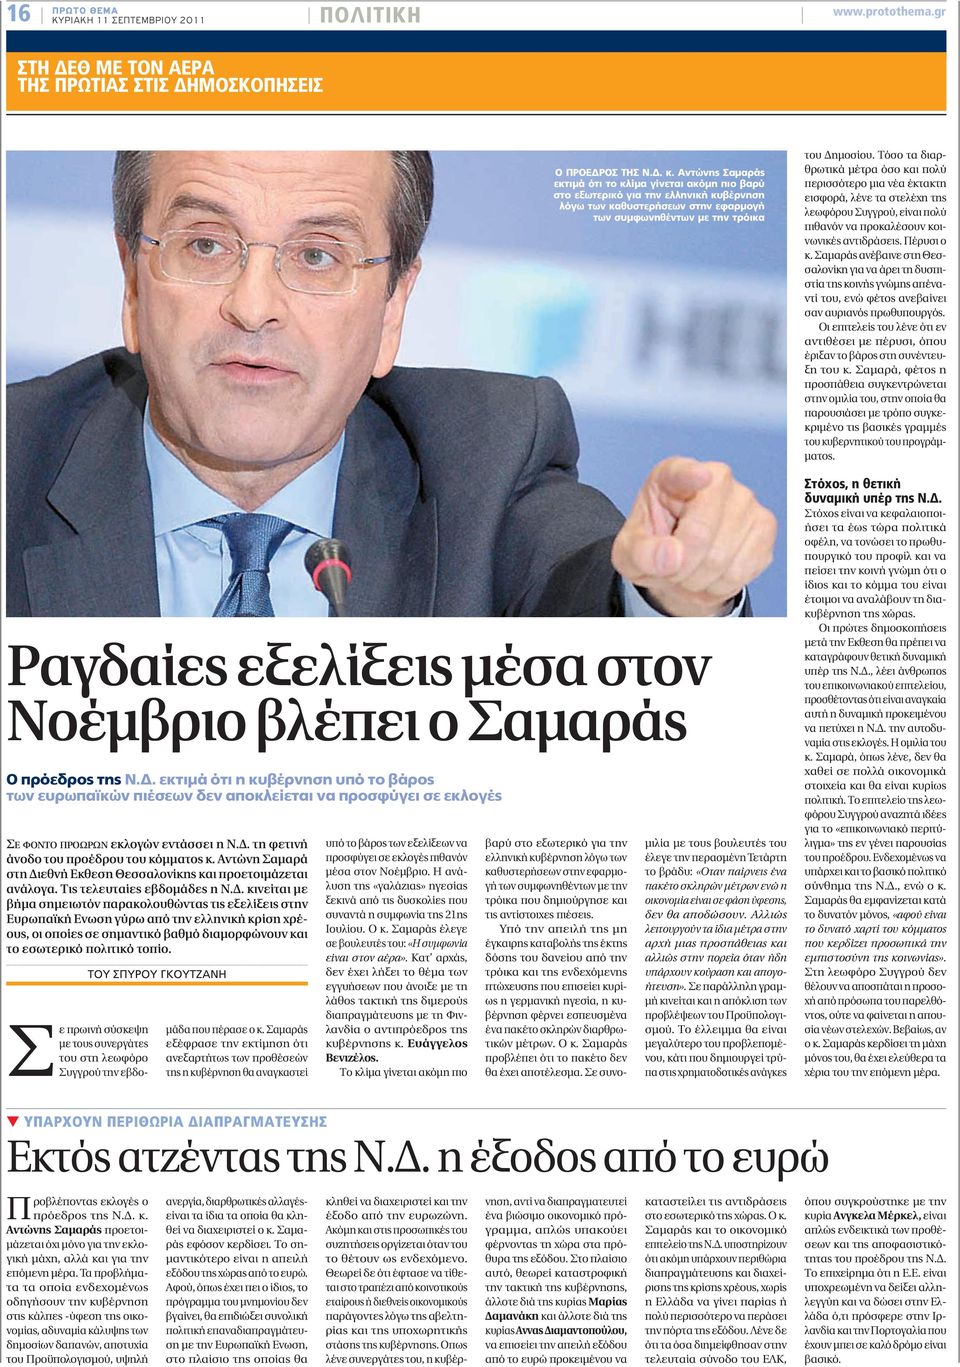 Δ. τη φετινή άνοδο του προέδρου του κόμματος κ. Αντώνη Σαμαρά στη Διεθνή Εκθεση Θεσσαλονίκης και προετοιμάζεται ανάλογα. Τις τελευταίες εβδομάδες η Ν.Δ. κινείται με βήμα σημειωτόν παρακολουθώντας τις εξελίξεις στην Ευρωπαϊκή Ενωση γύρω από την ελληνική κρίση χρέους, οι οποίες σε σημαντικό βαθμό διαμορφώνουν και το εσωτερικό πολιτικό τοπίο.